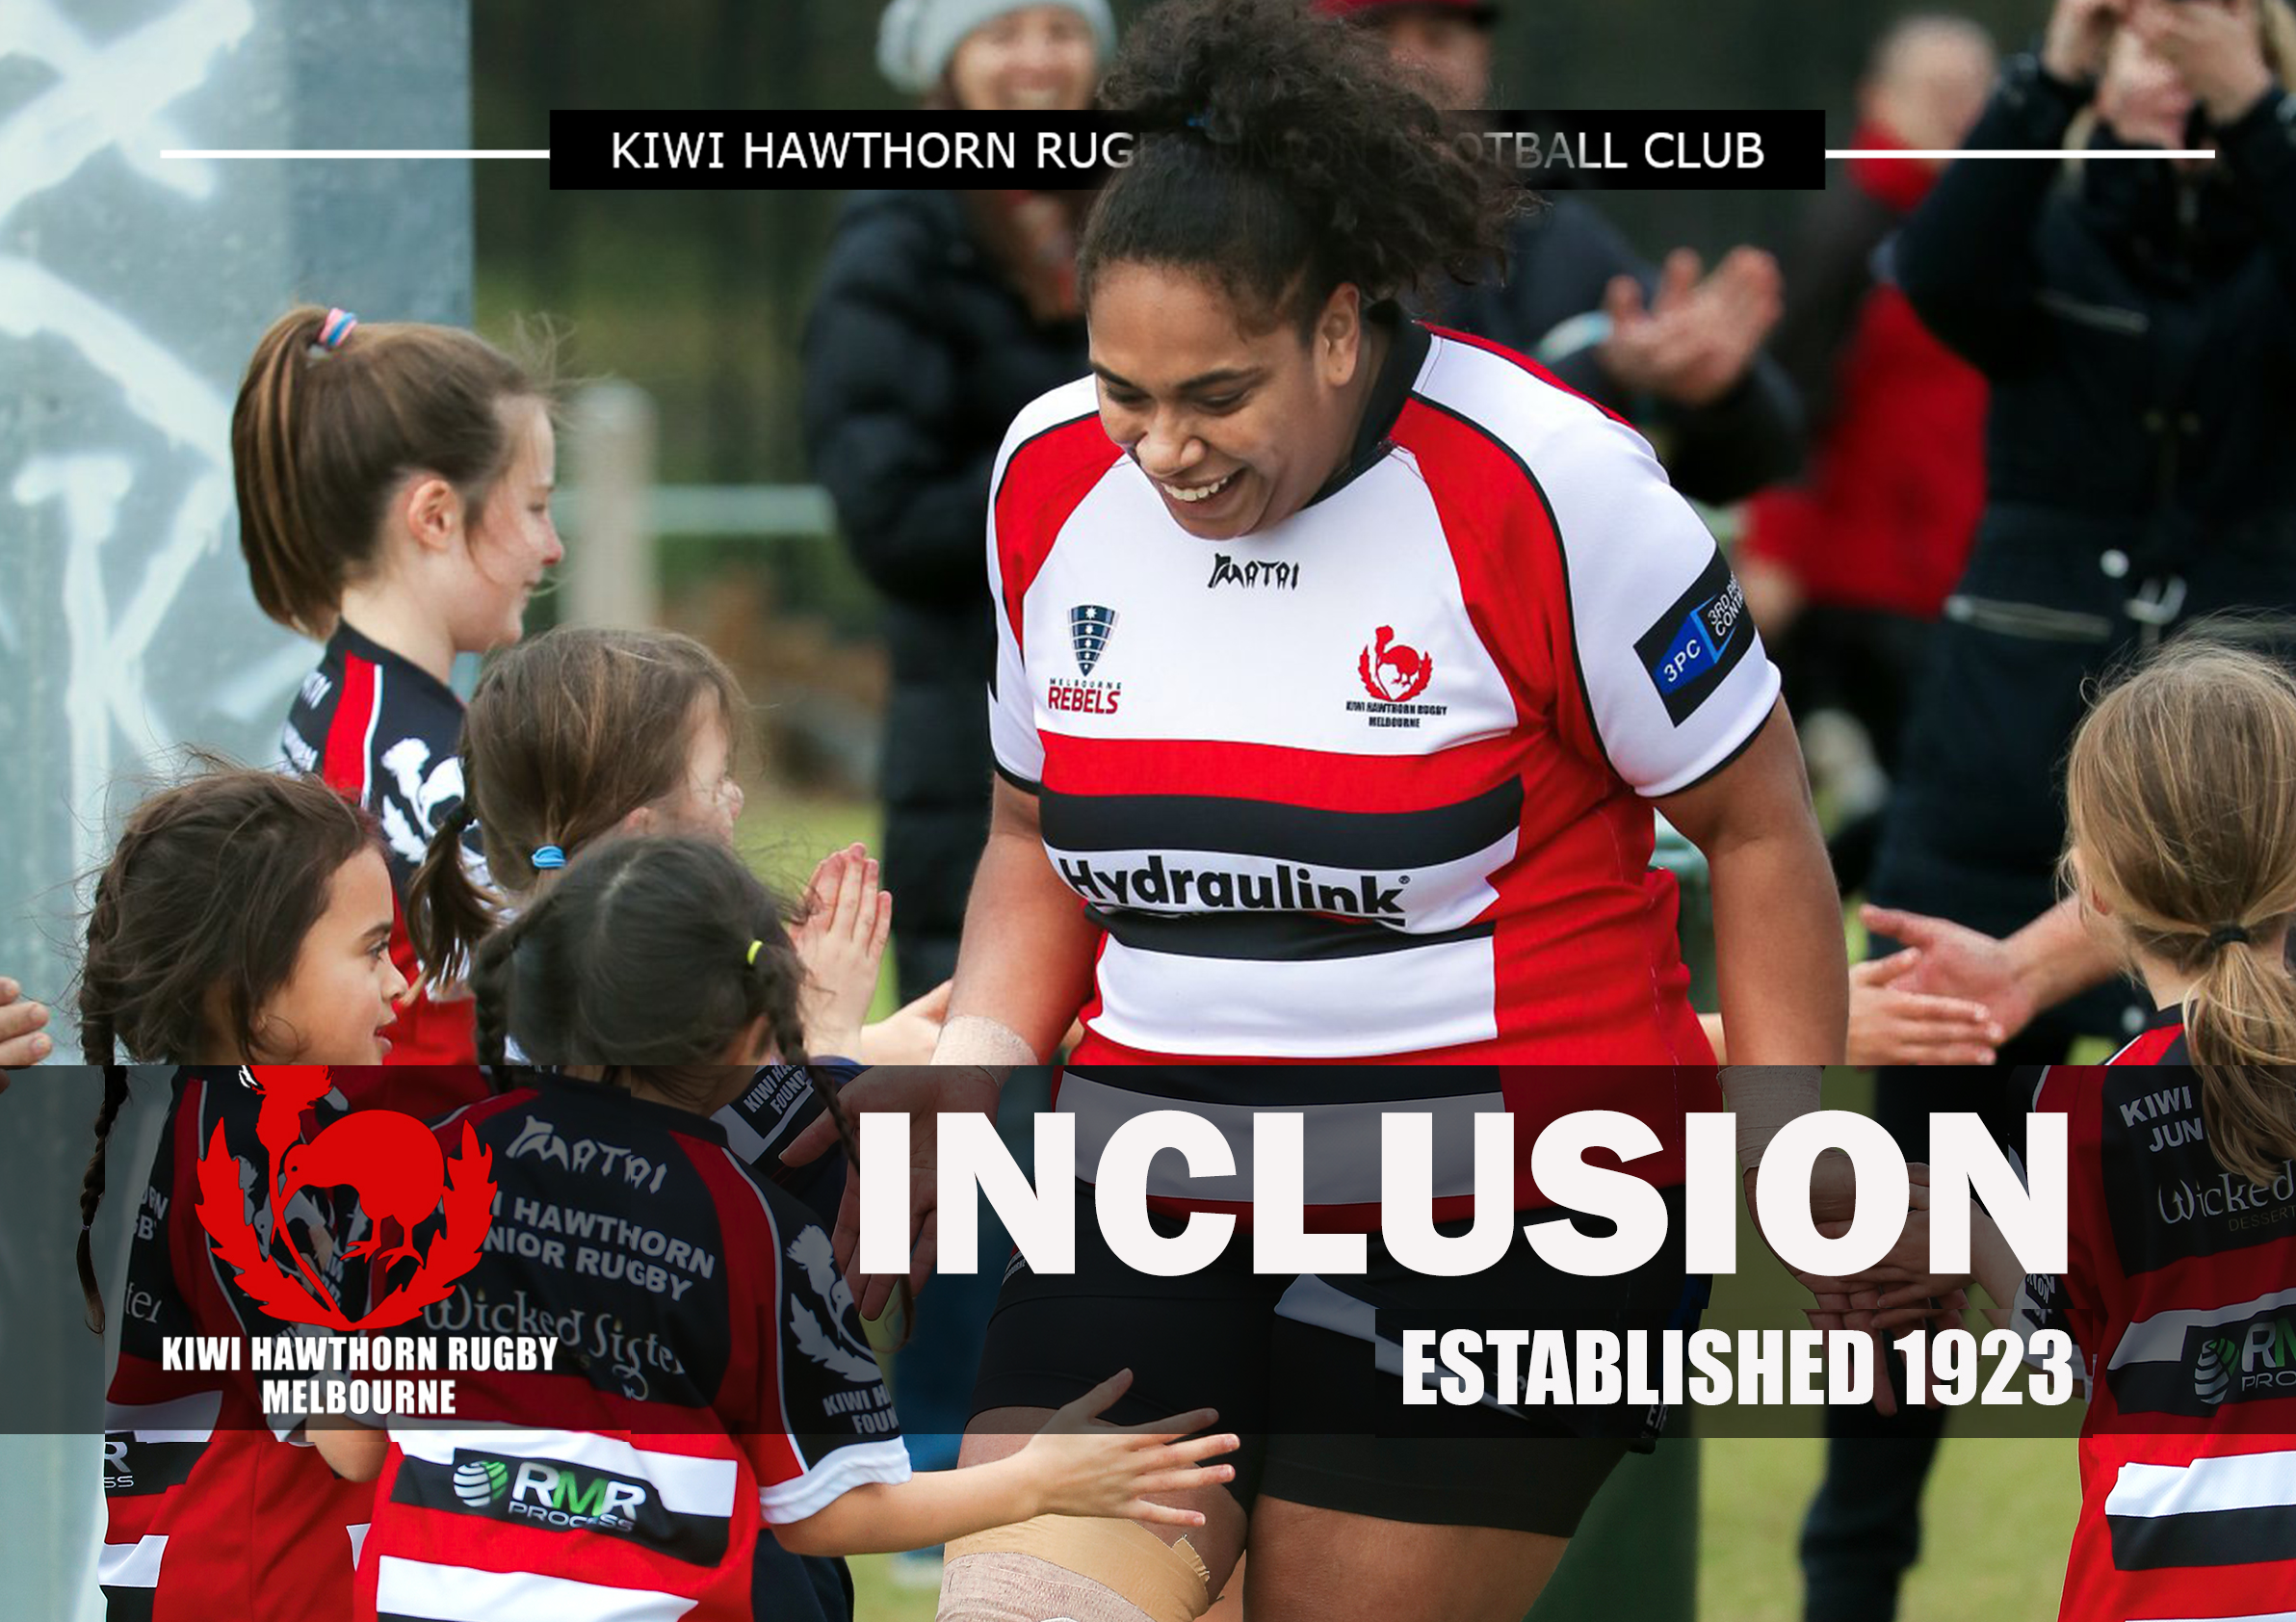 Kiwi Hawthorn Rugby Club Values Inclusion (Copy)